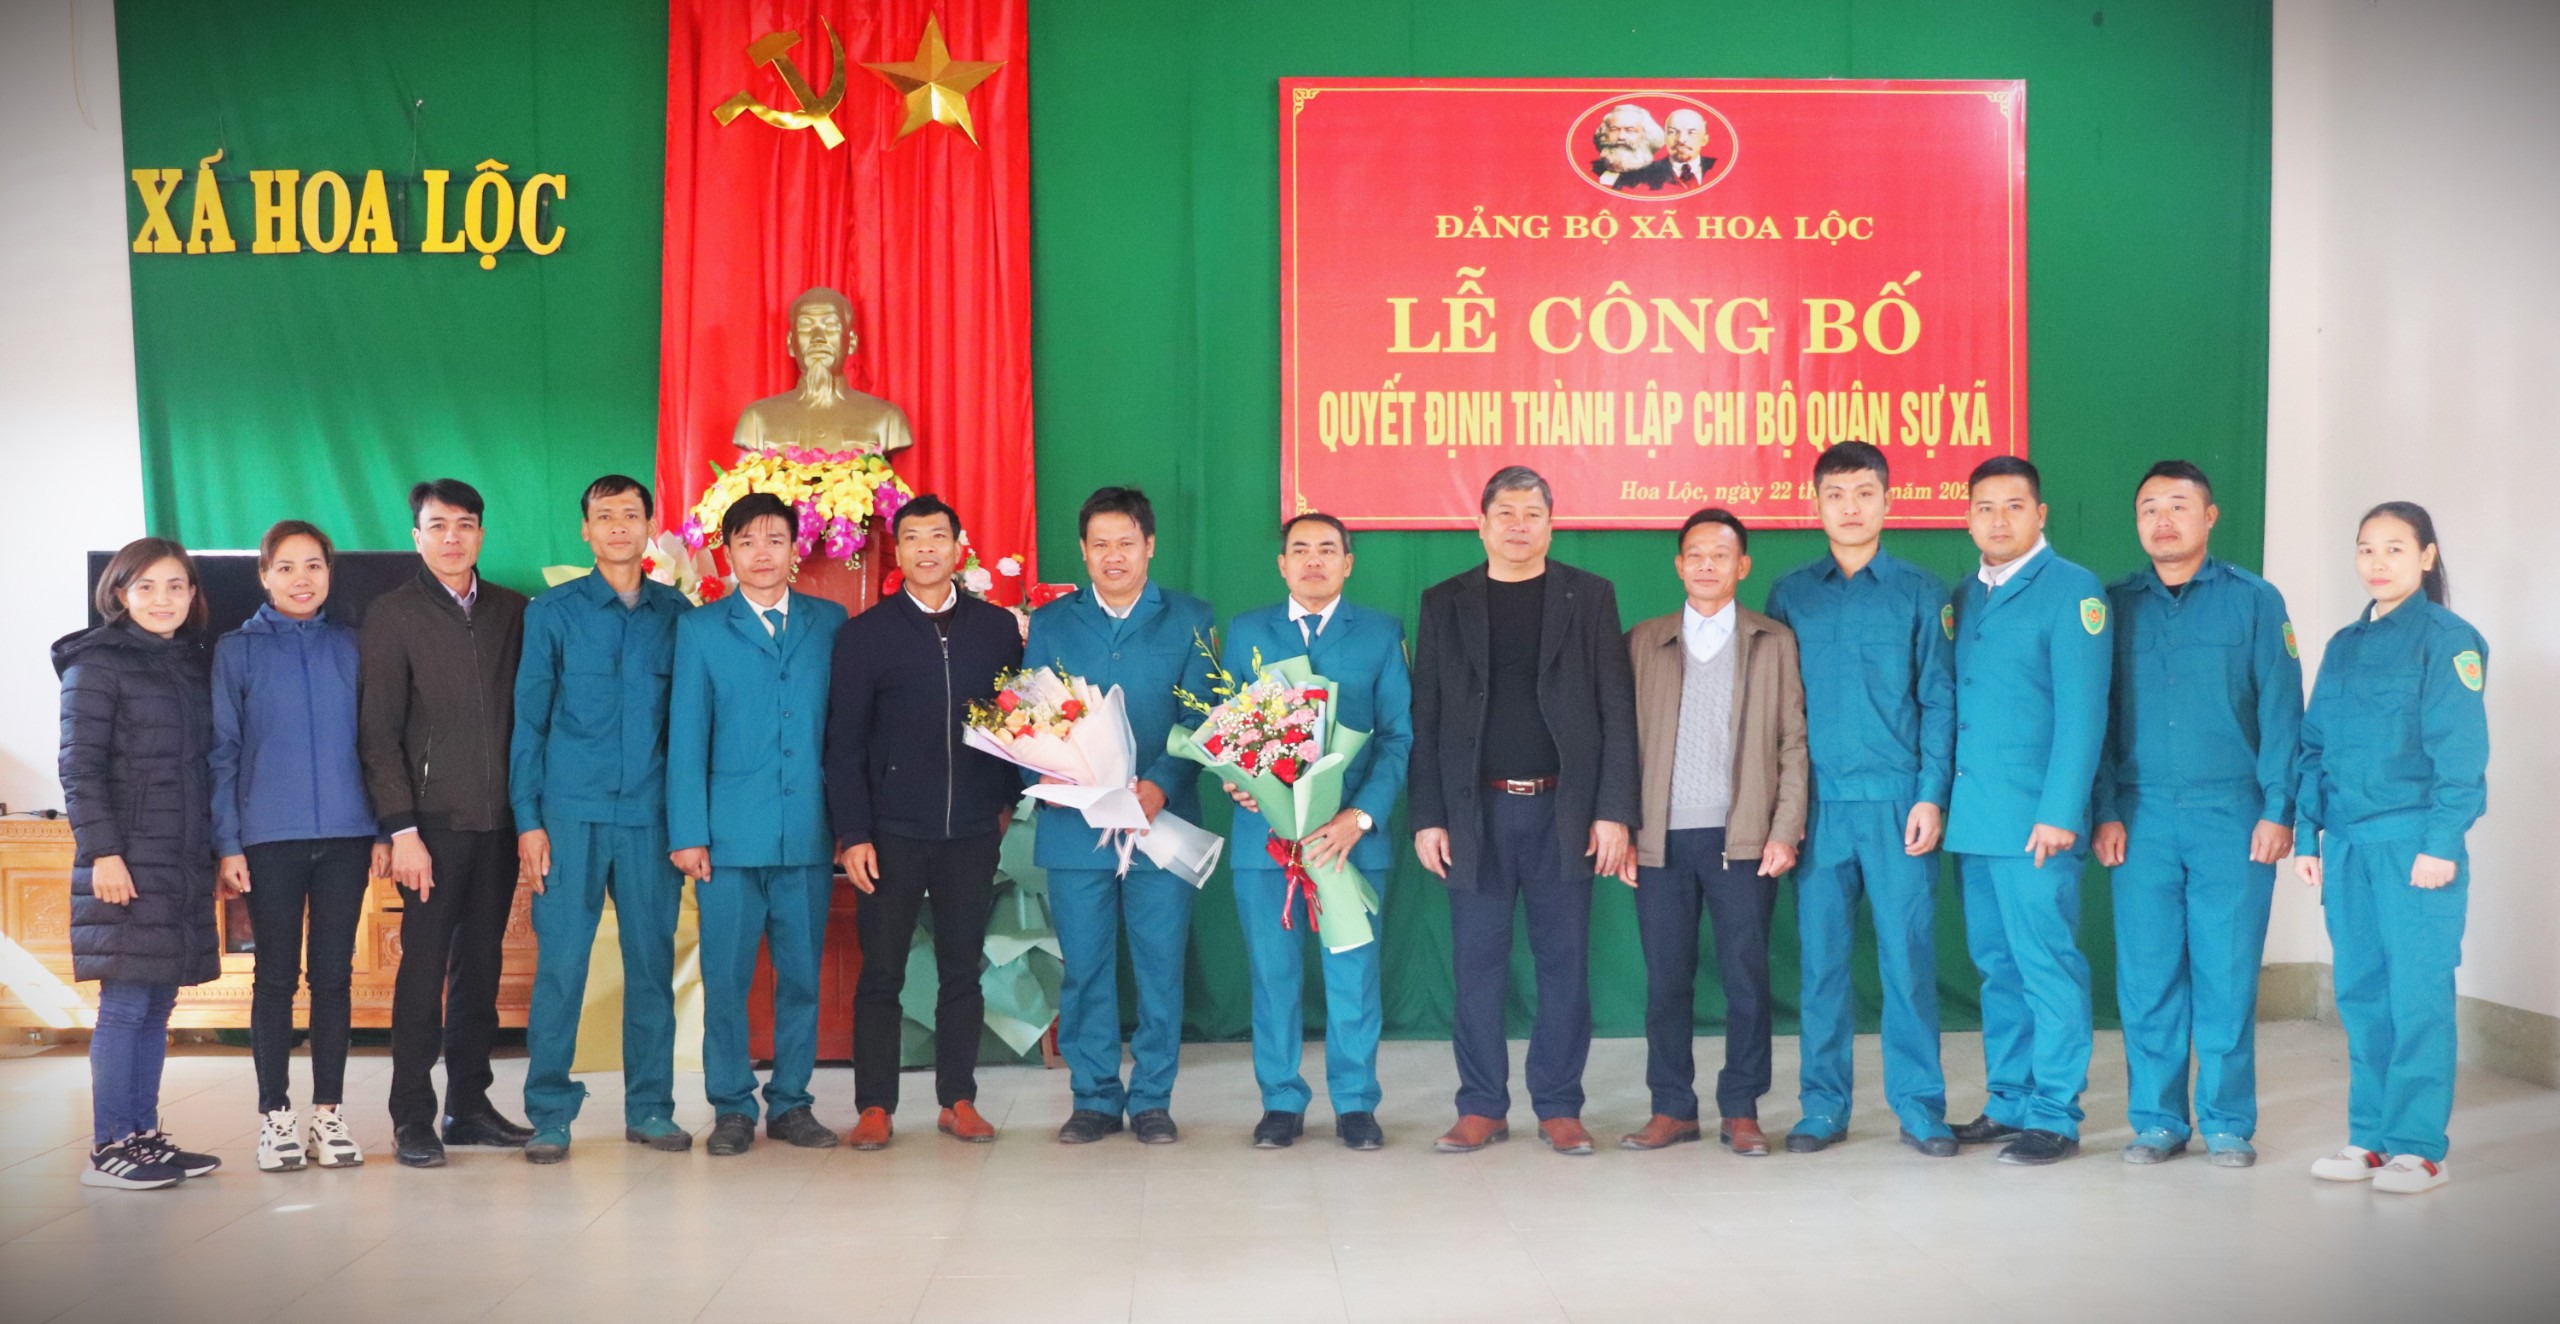 Đảng ủy xã Hoa Lộc tổ chức Lễ công bố quyết định thành lập chi bộ quân sự xã